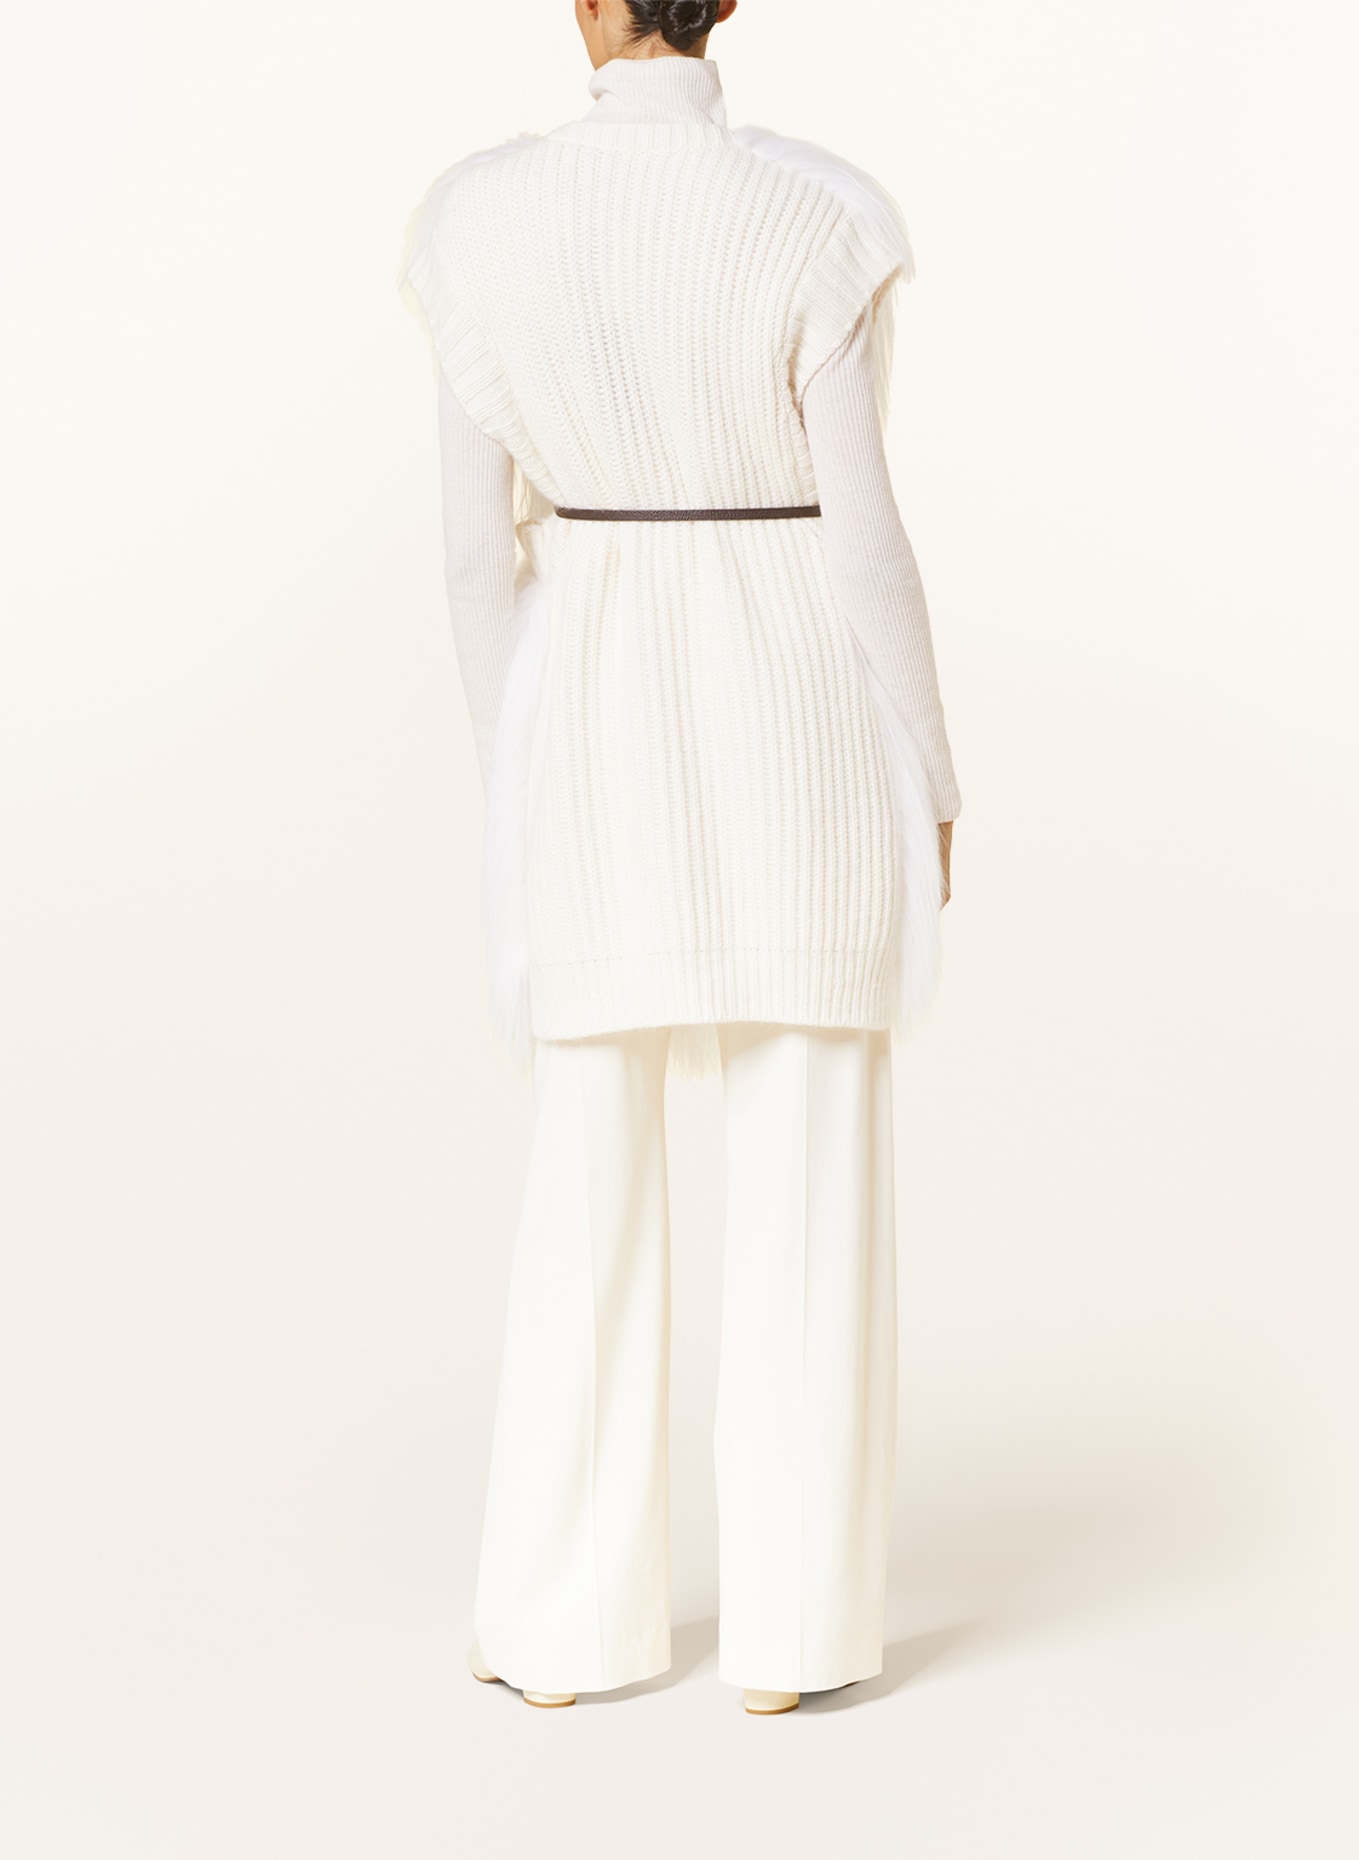 FABIANA FILIPPI Knit vest in cashmere, Color: WHITE (Image 3)